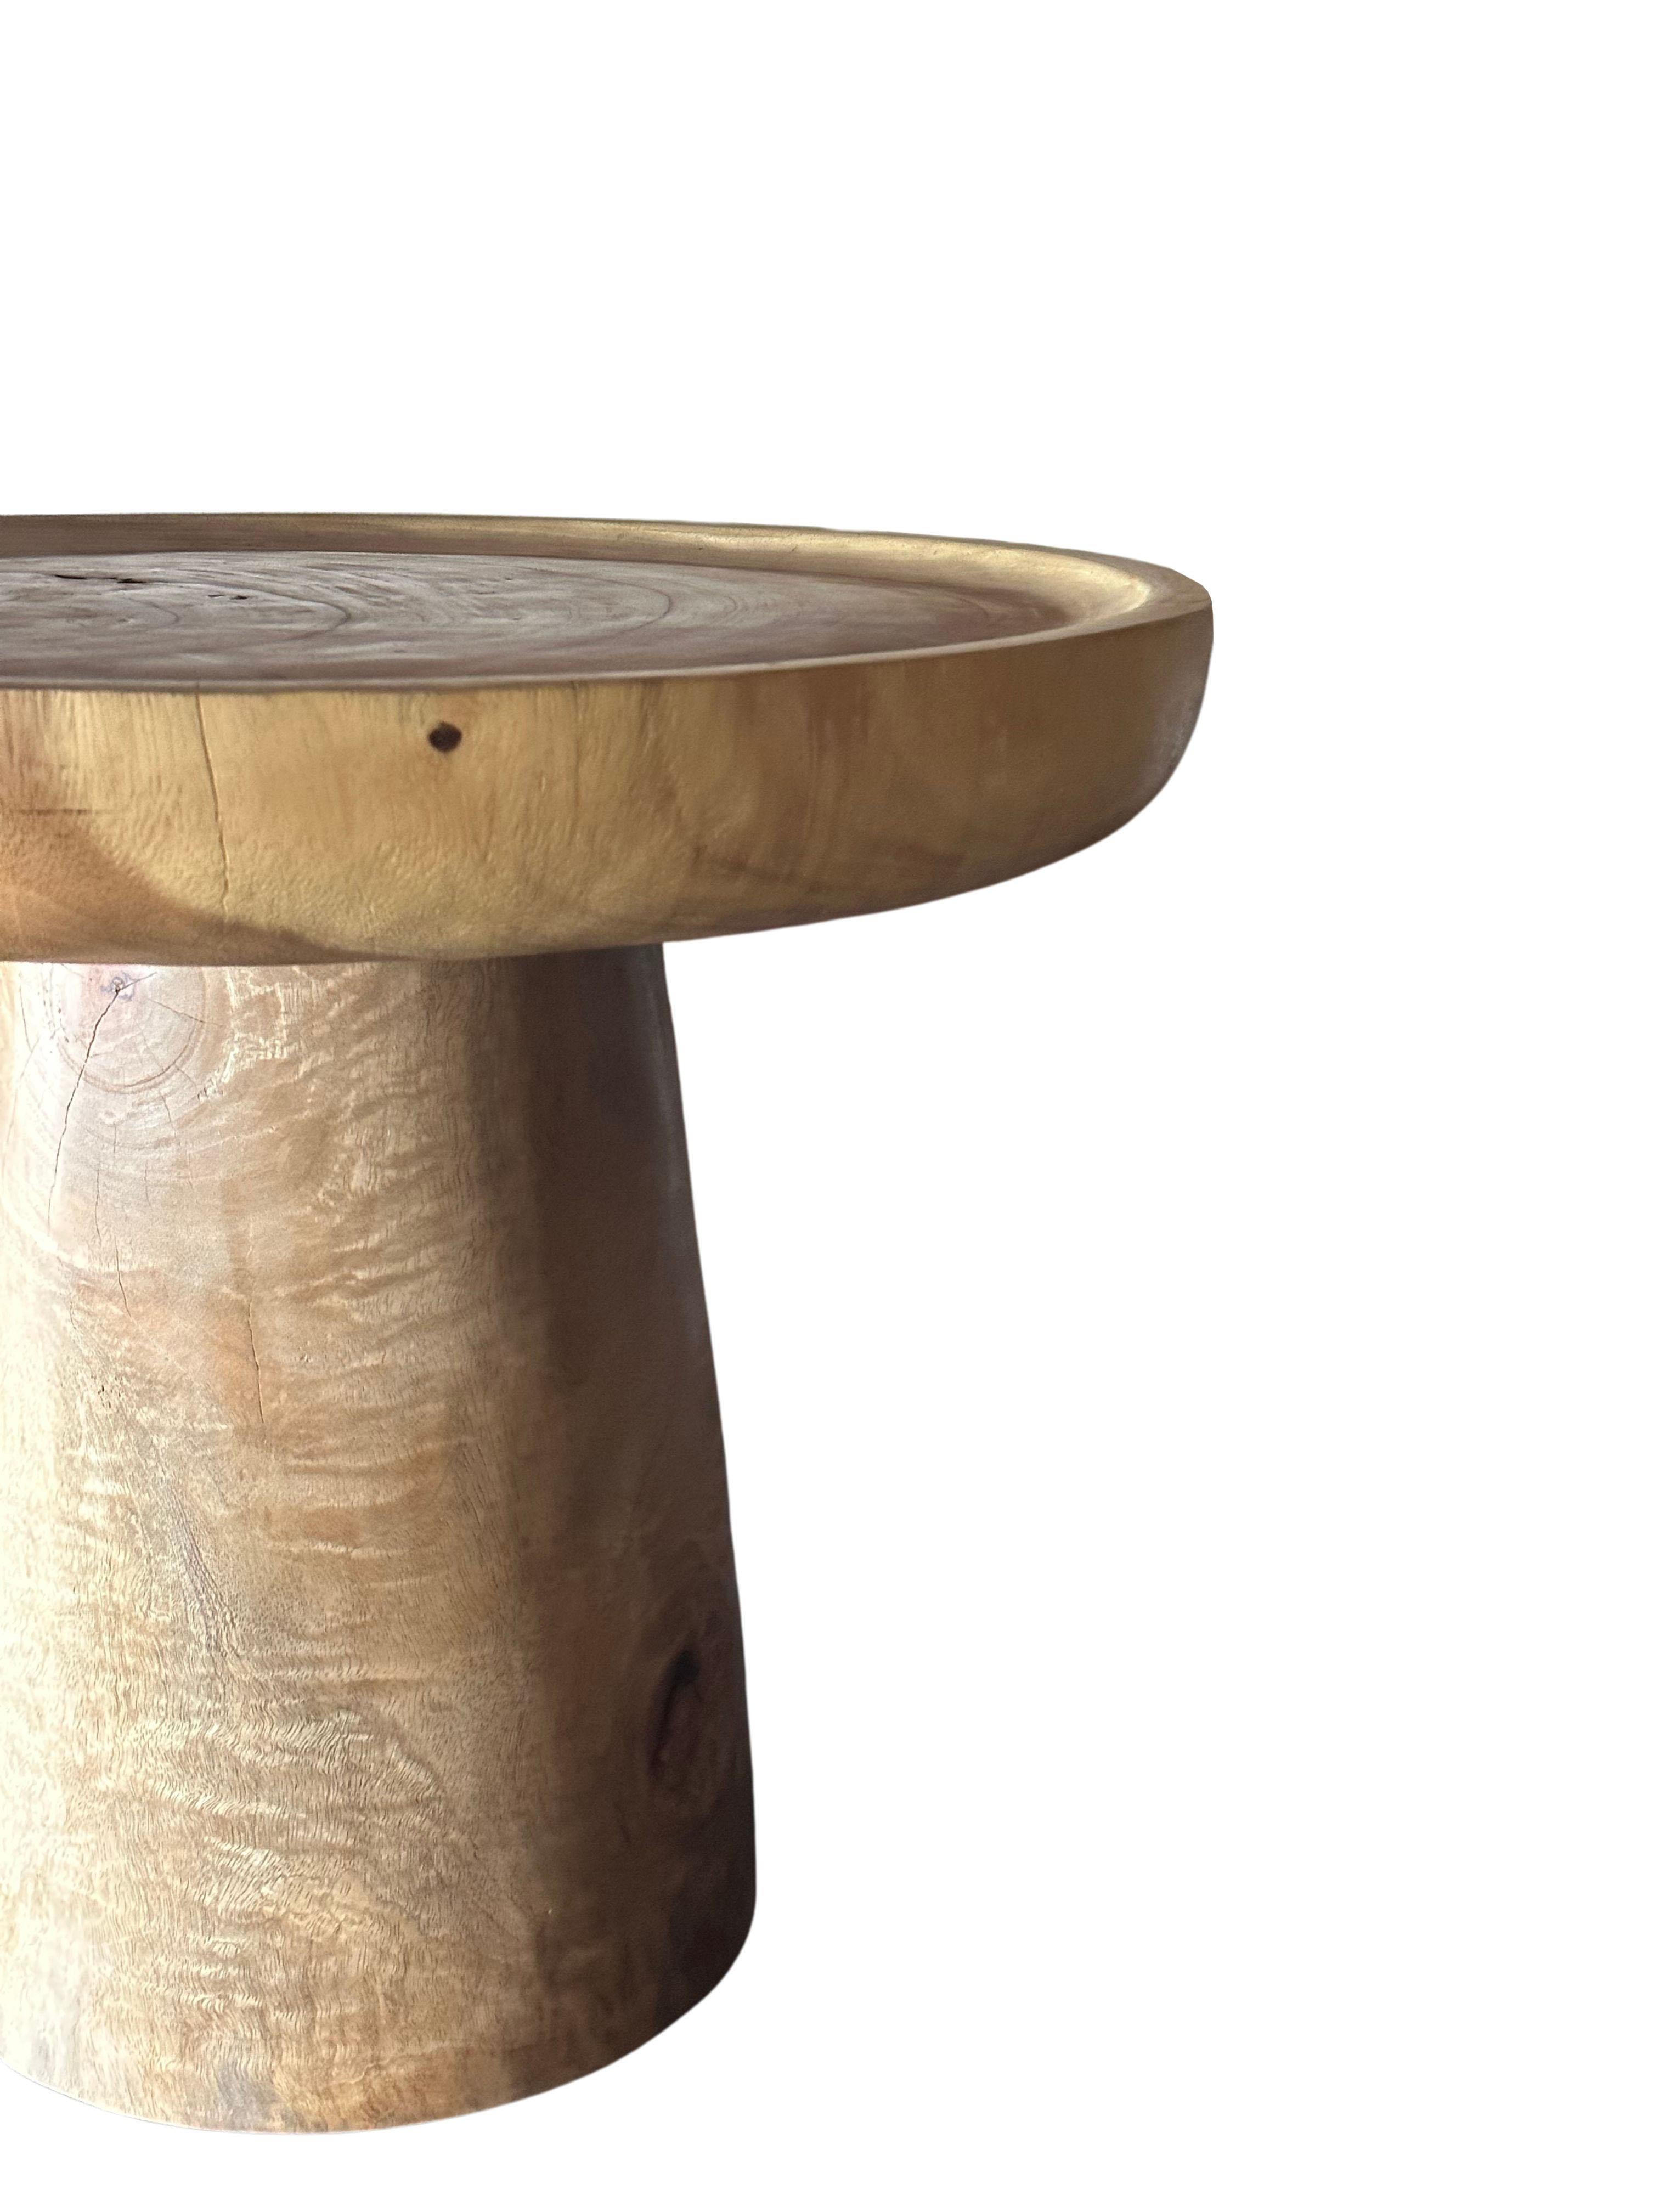 Dieser wunderbar skulpturale runde Beistelltisch verfügt über eine Tischplatte mit einem flachen Becken und einem umlaufenden Rand. Die neutrale Farbgebung des Tisches macht ihn perfekt für jeden Raum. Er wurde aus einem massiven Block Mangoholz